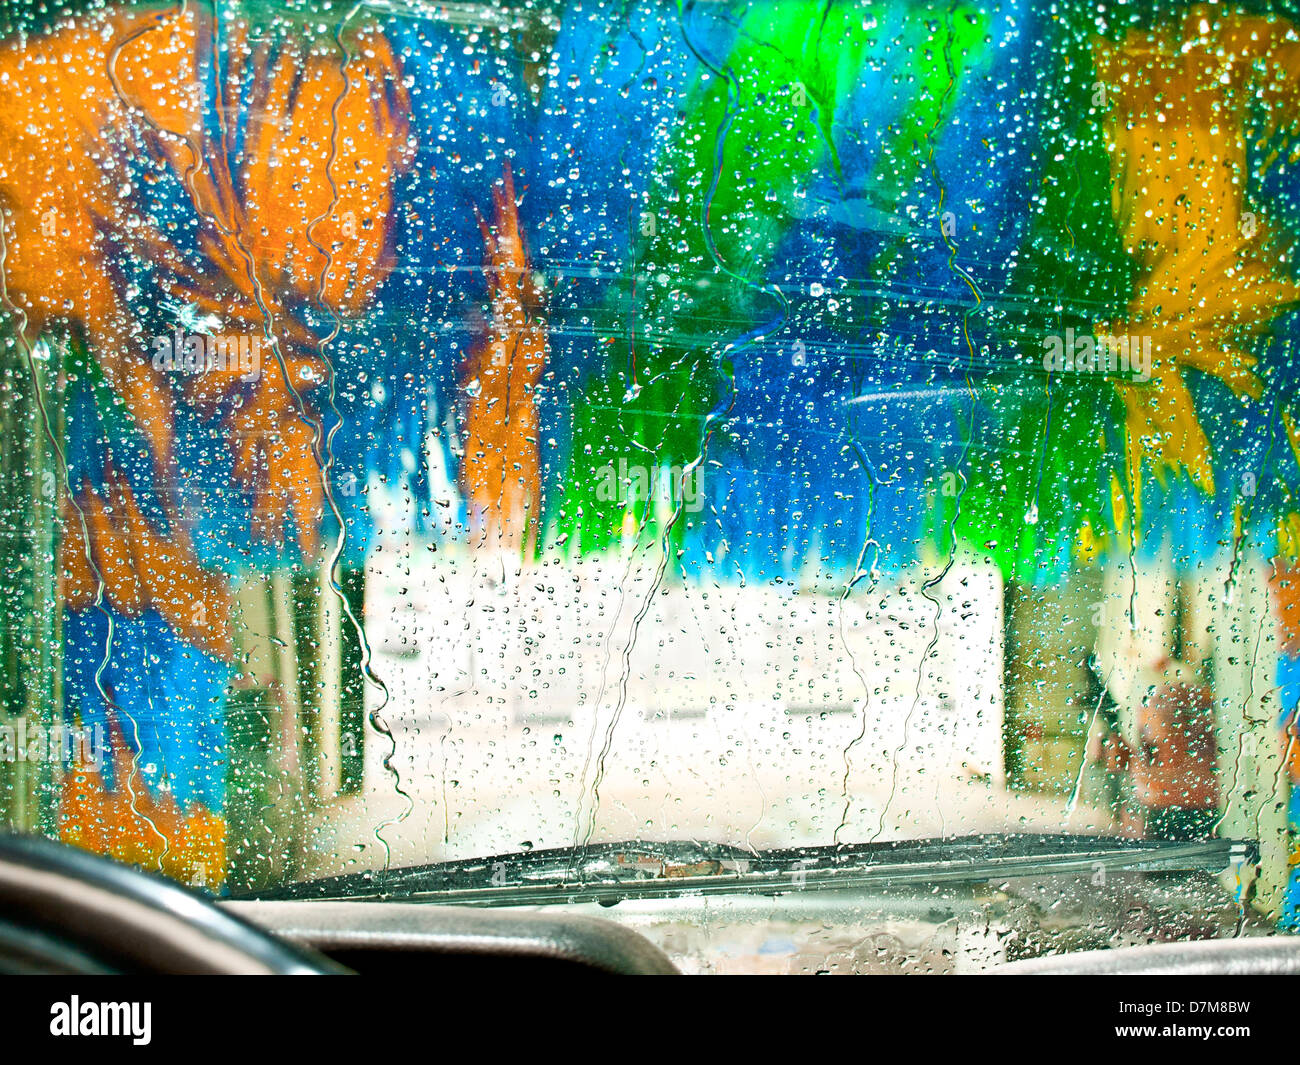 finished automotive car - washing Stock Photo